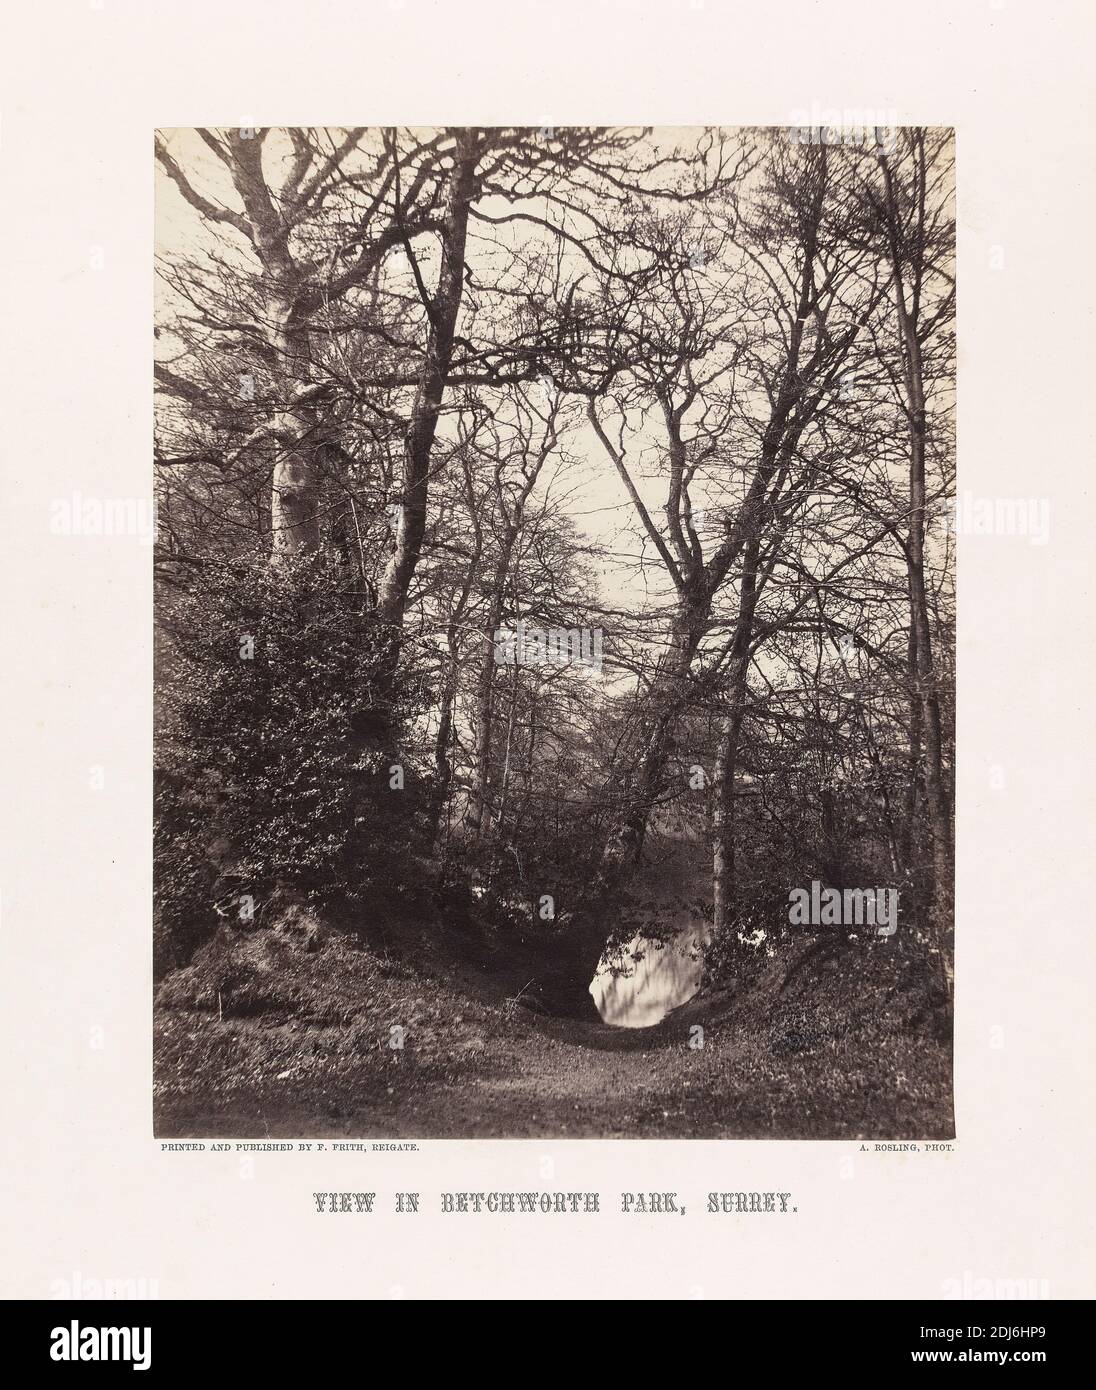 Vue à Betchworth Park, Surrey, Alfred Rosling, 1802–ca. 1880, British, publié par Francis Frith, 1822–1898, British, 1860s, imprimé d'albumine de collodion humide négatif sur papier fin, lisse, crème, feuille: 8 1/4 × 6 1/2 pouces (21 × 16.5 cm) et support: 14 1/2 × 11 1/2 pouces (36.8 × 29.2 cm), paysage, arbres, Betchworth, Angleterre, Surrey, Royaume-Uni Banque D'Images